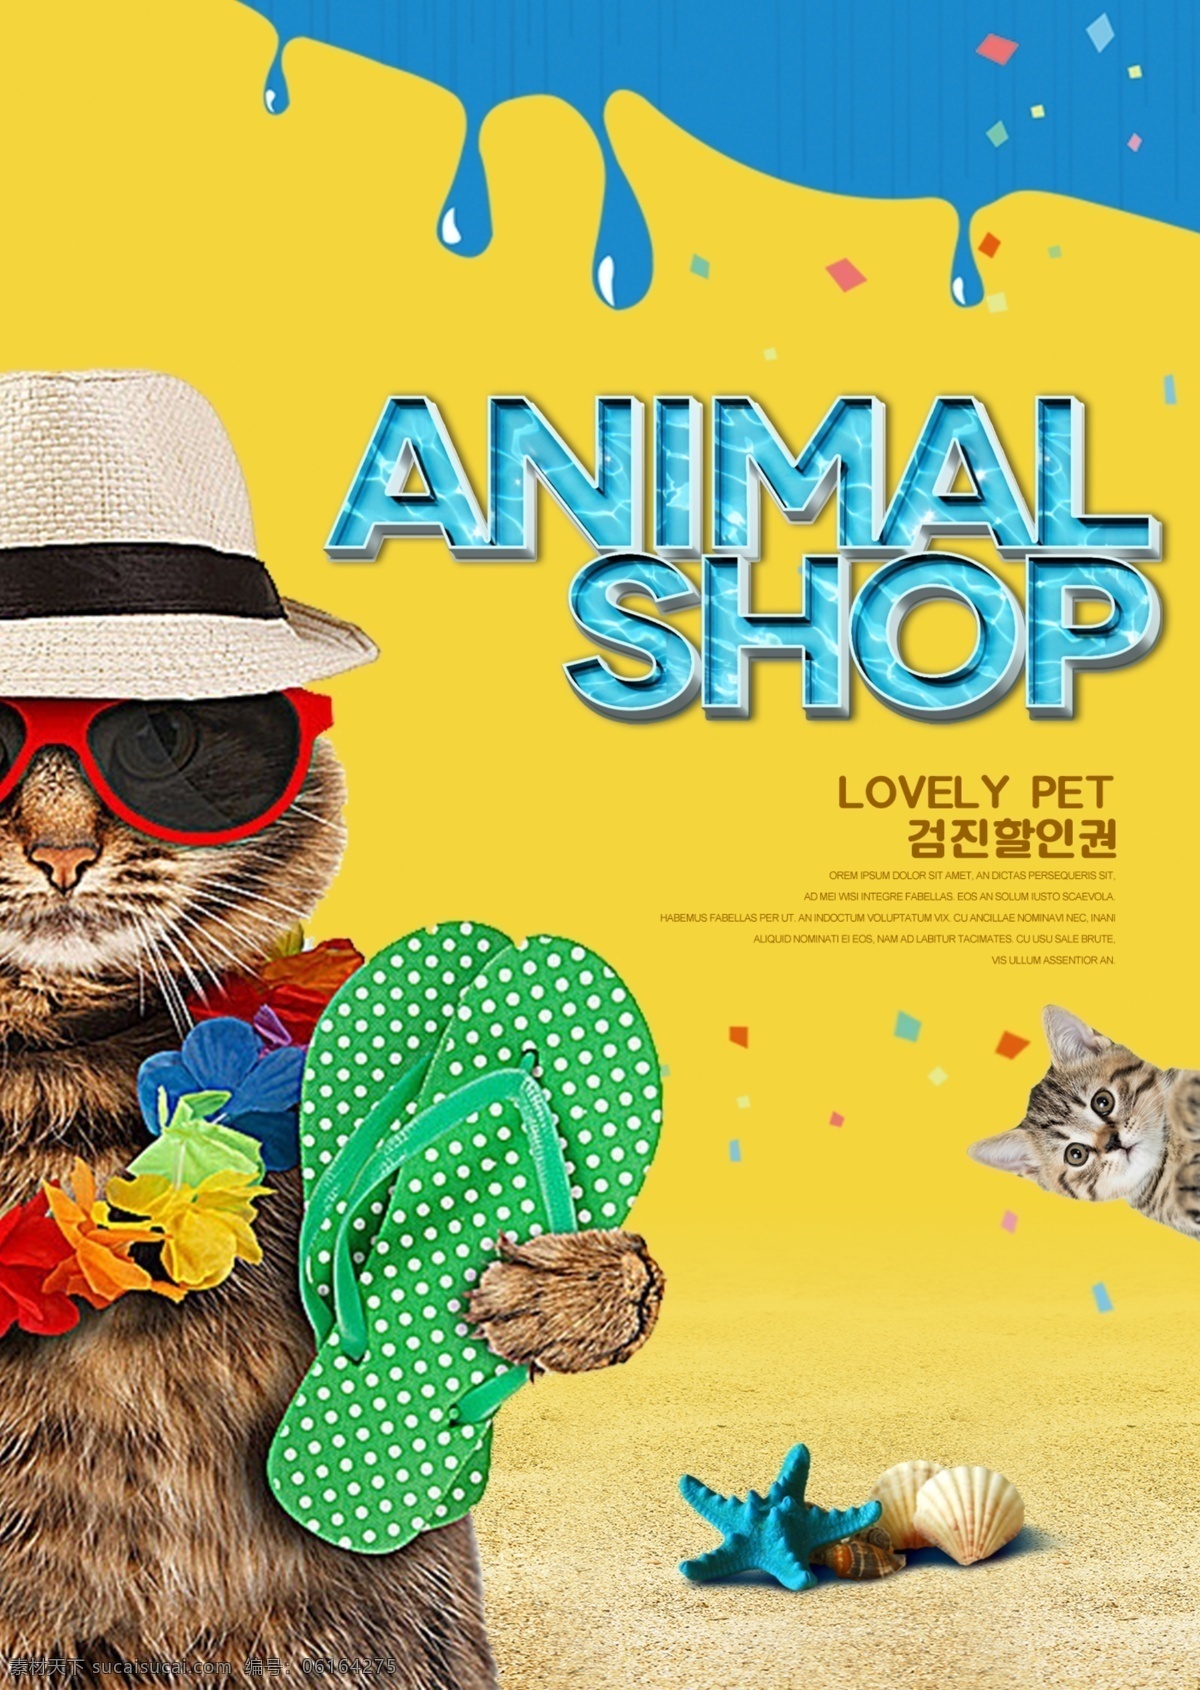 夏季 风格 时尚 色彩 宠物 宣传海报 样式 现代 色彩艺术 流行 拥护 海报 来源材料